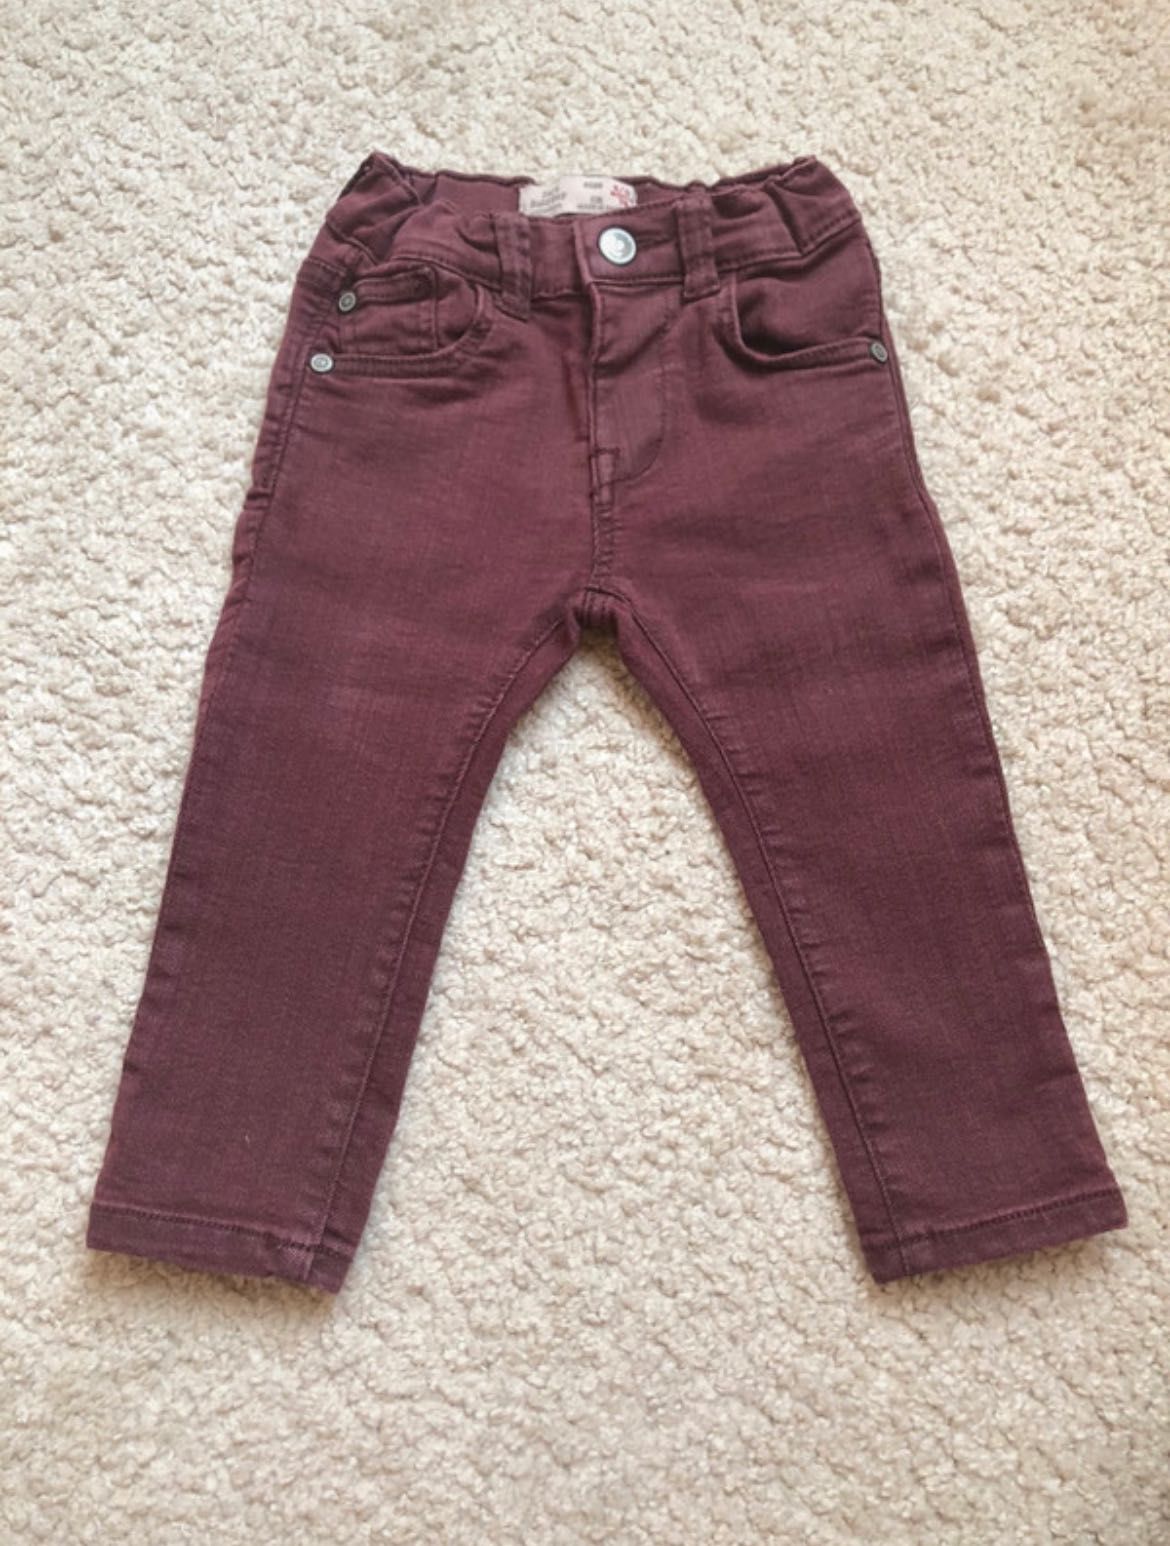 Bordowe jeansy rurki marki Zara rozmiar 74